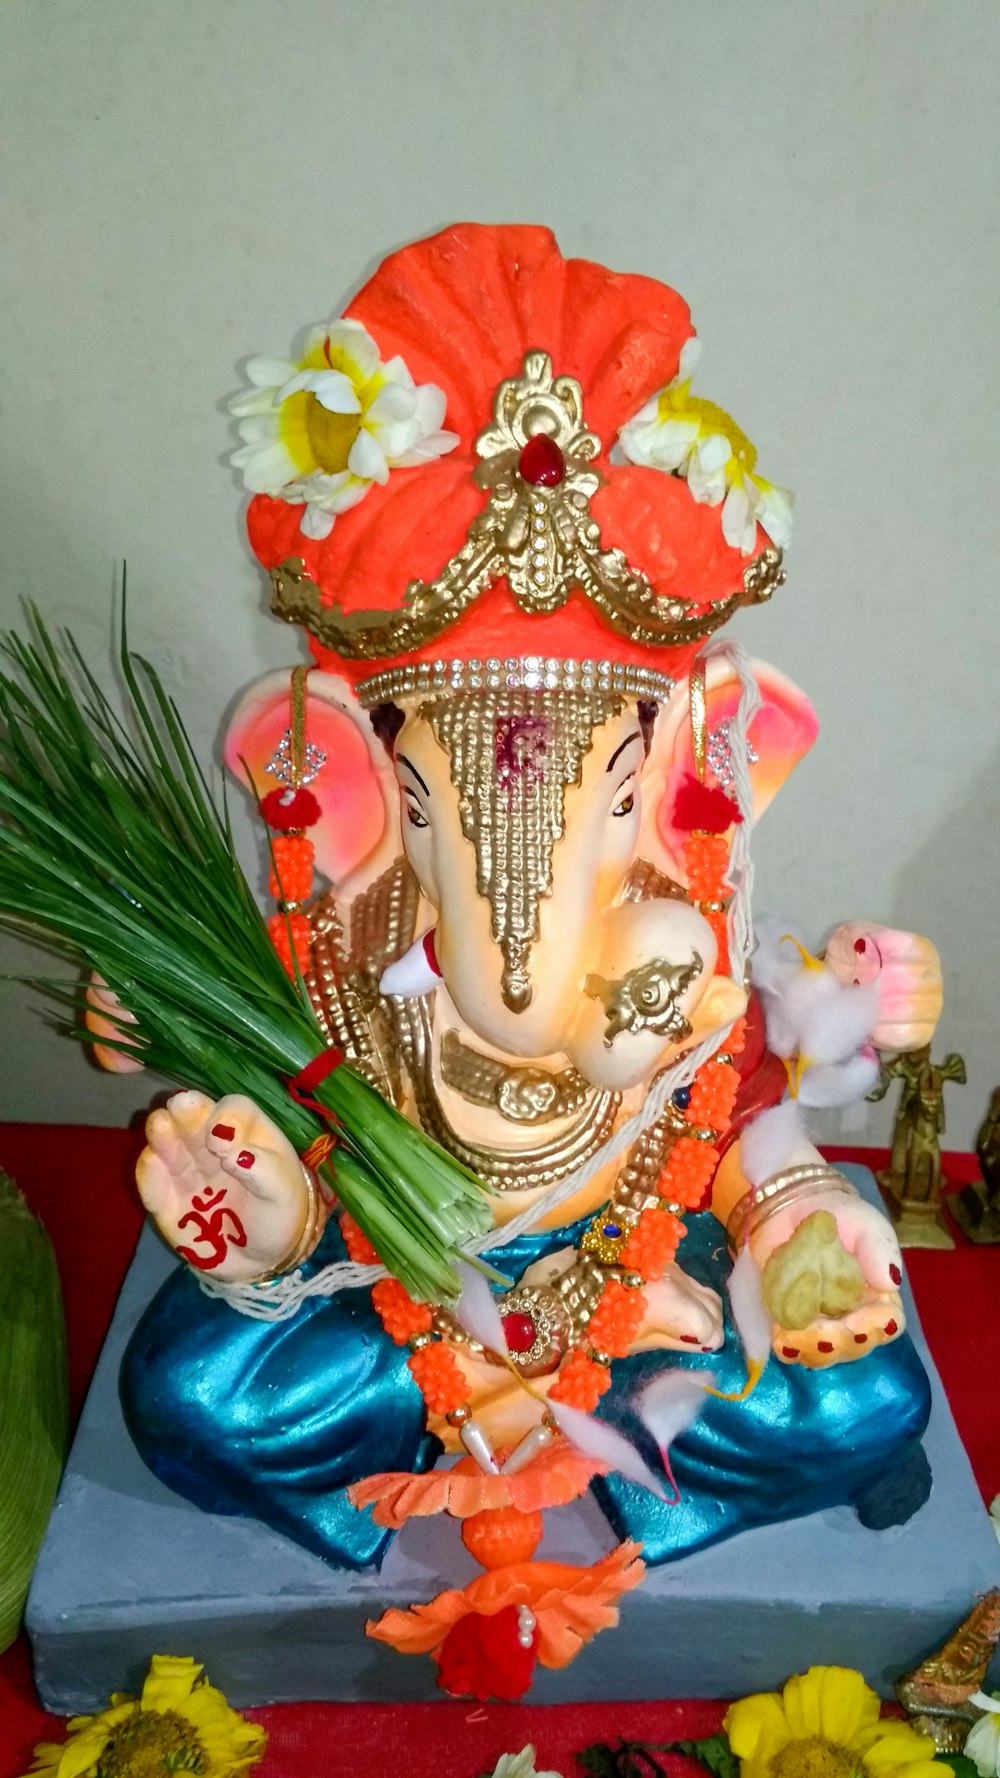 Una estatua de un elefante con flores sobre una mesa